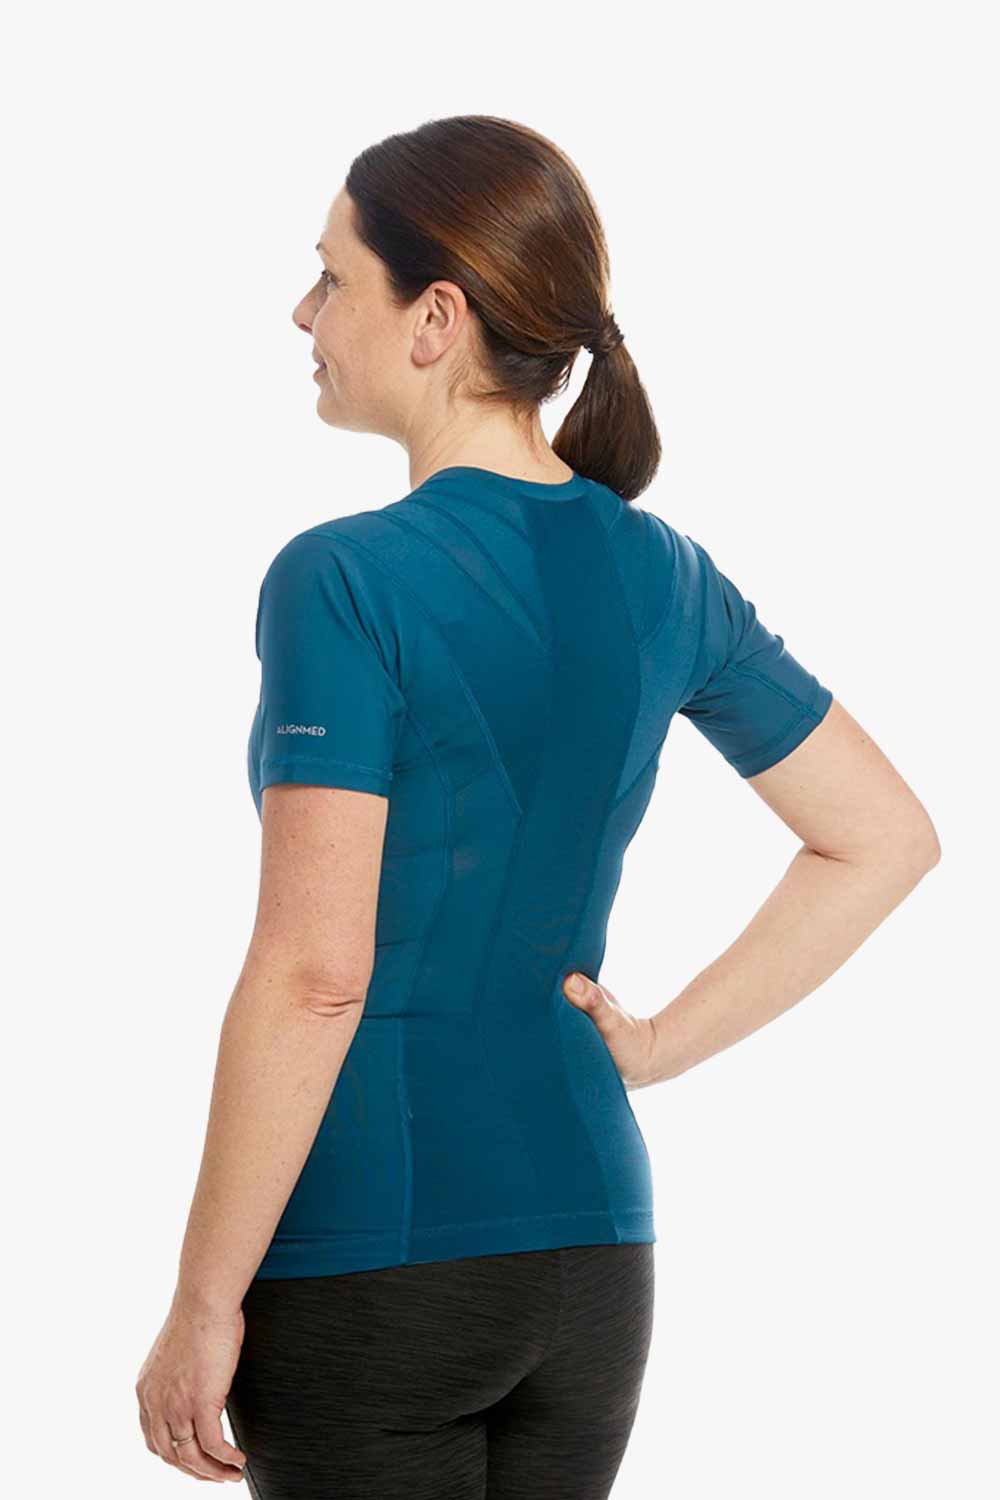 Women's Posture Shirt™ - Blauw